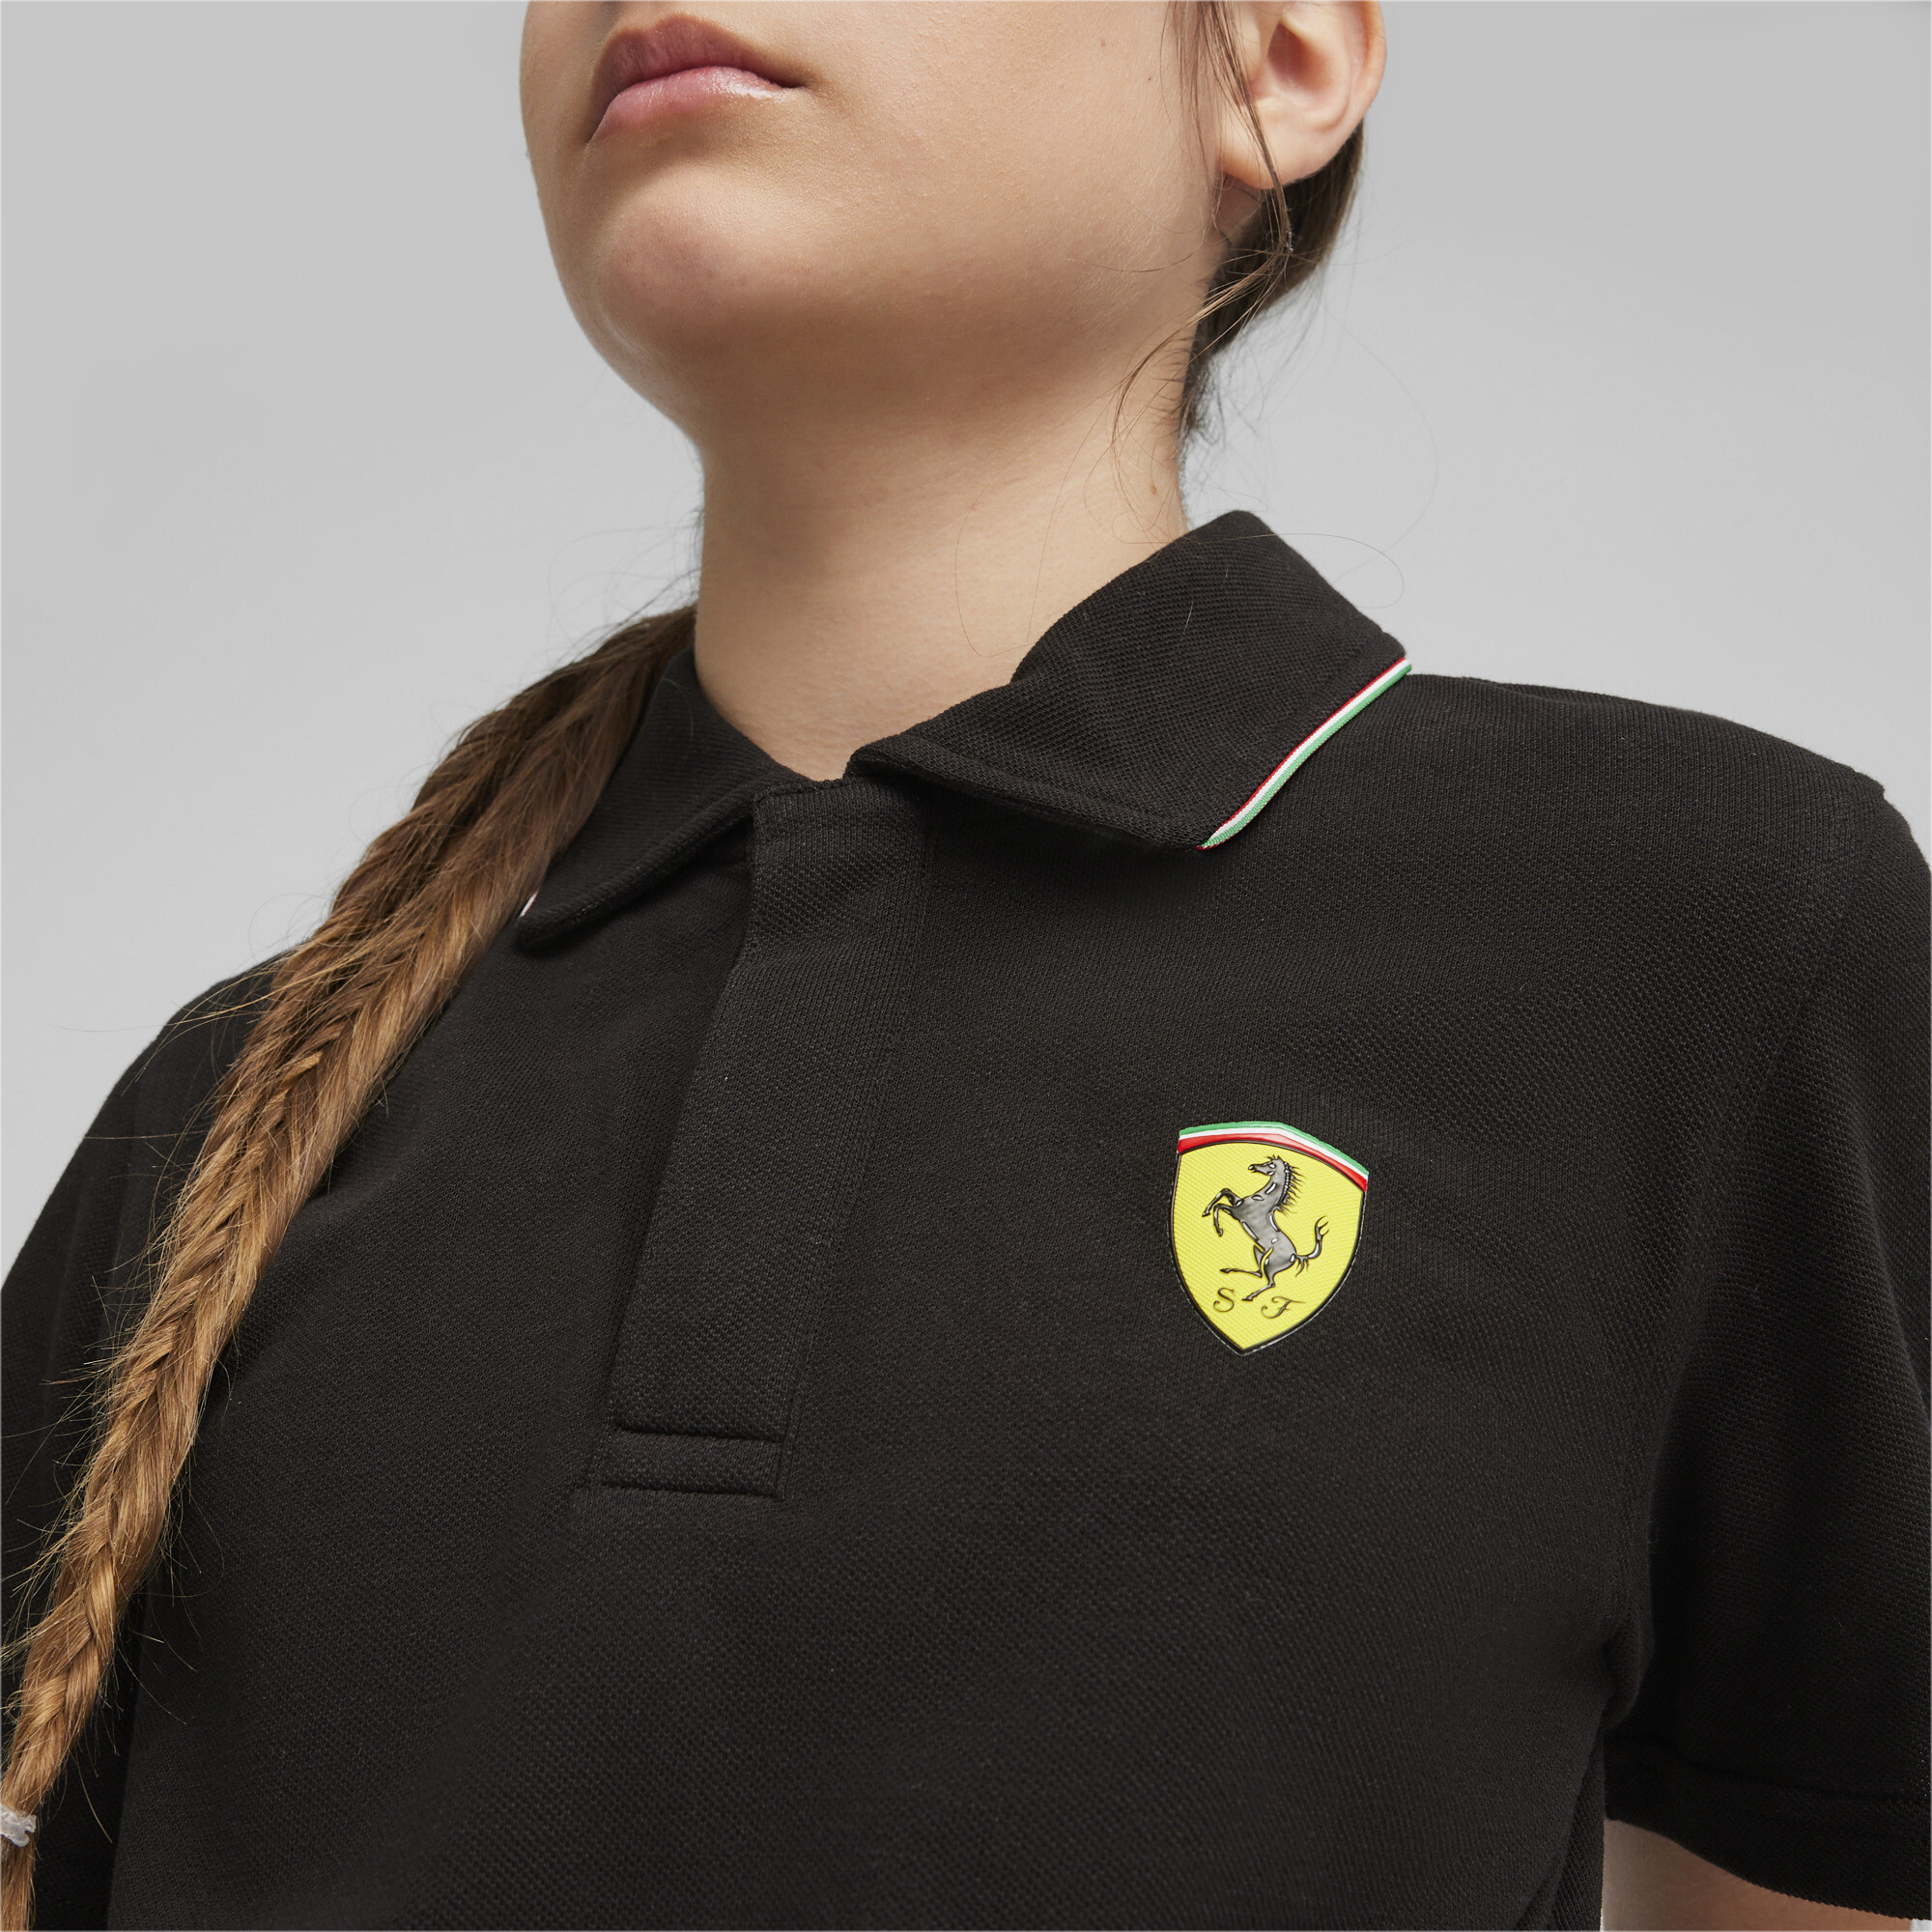 PUMA Scuderia Ferrari Race Polo In Black, Size 9-10 Youth